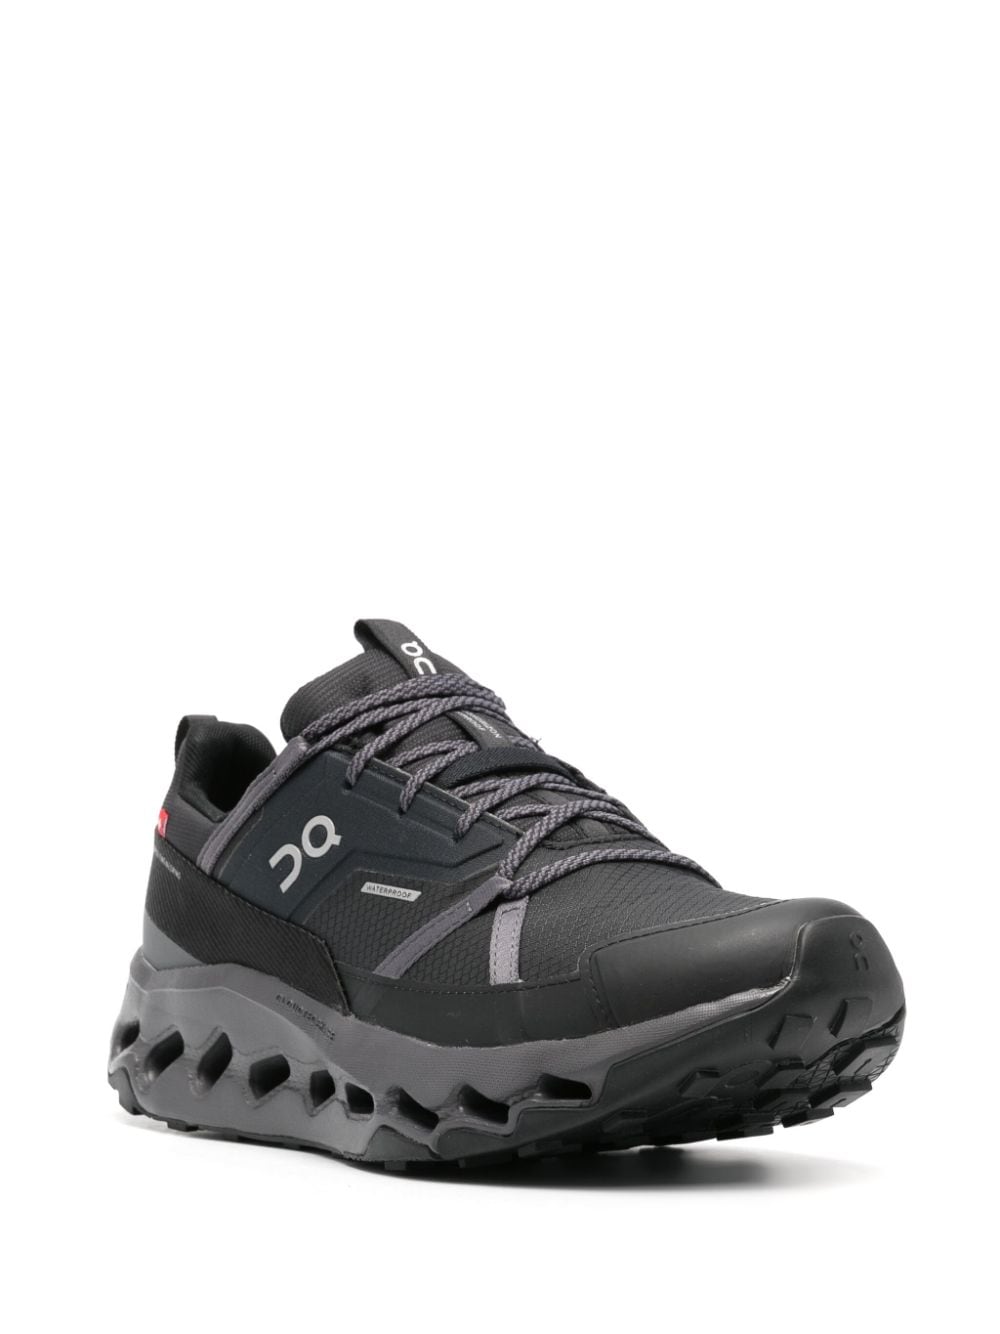 Shop On Running Cloudhorizon Waterproof Sneakers In Black